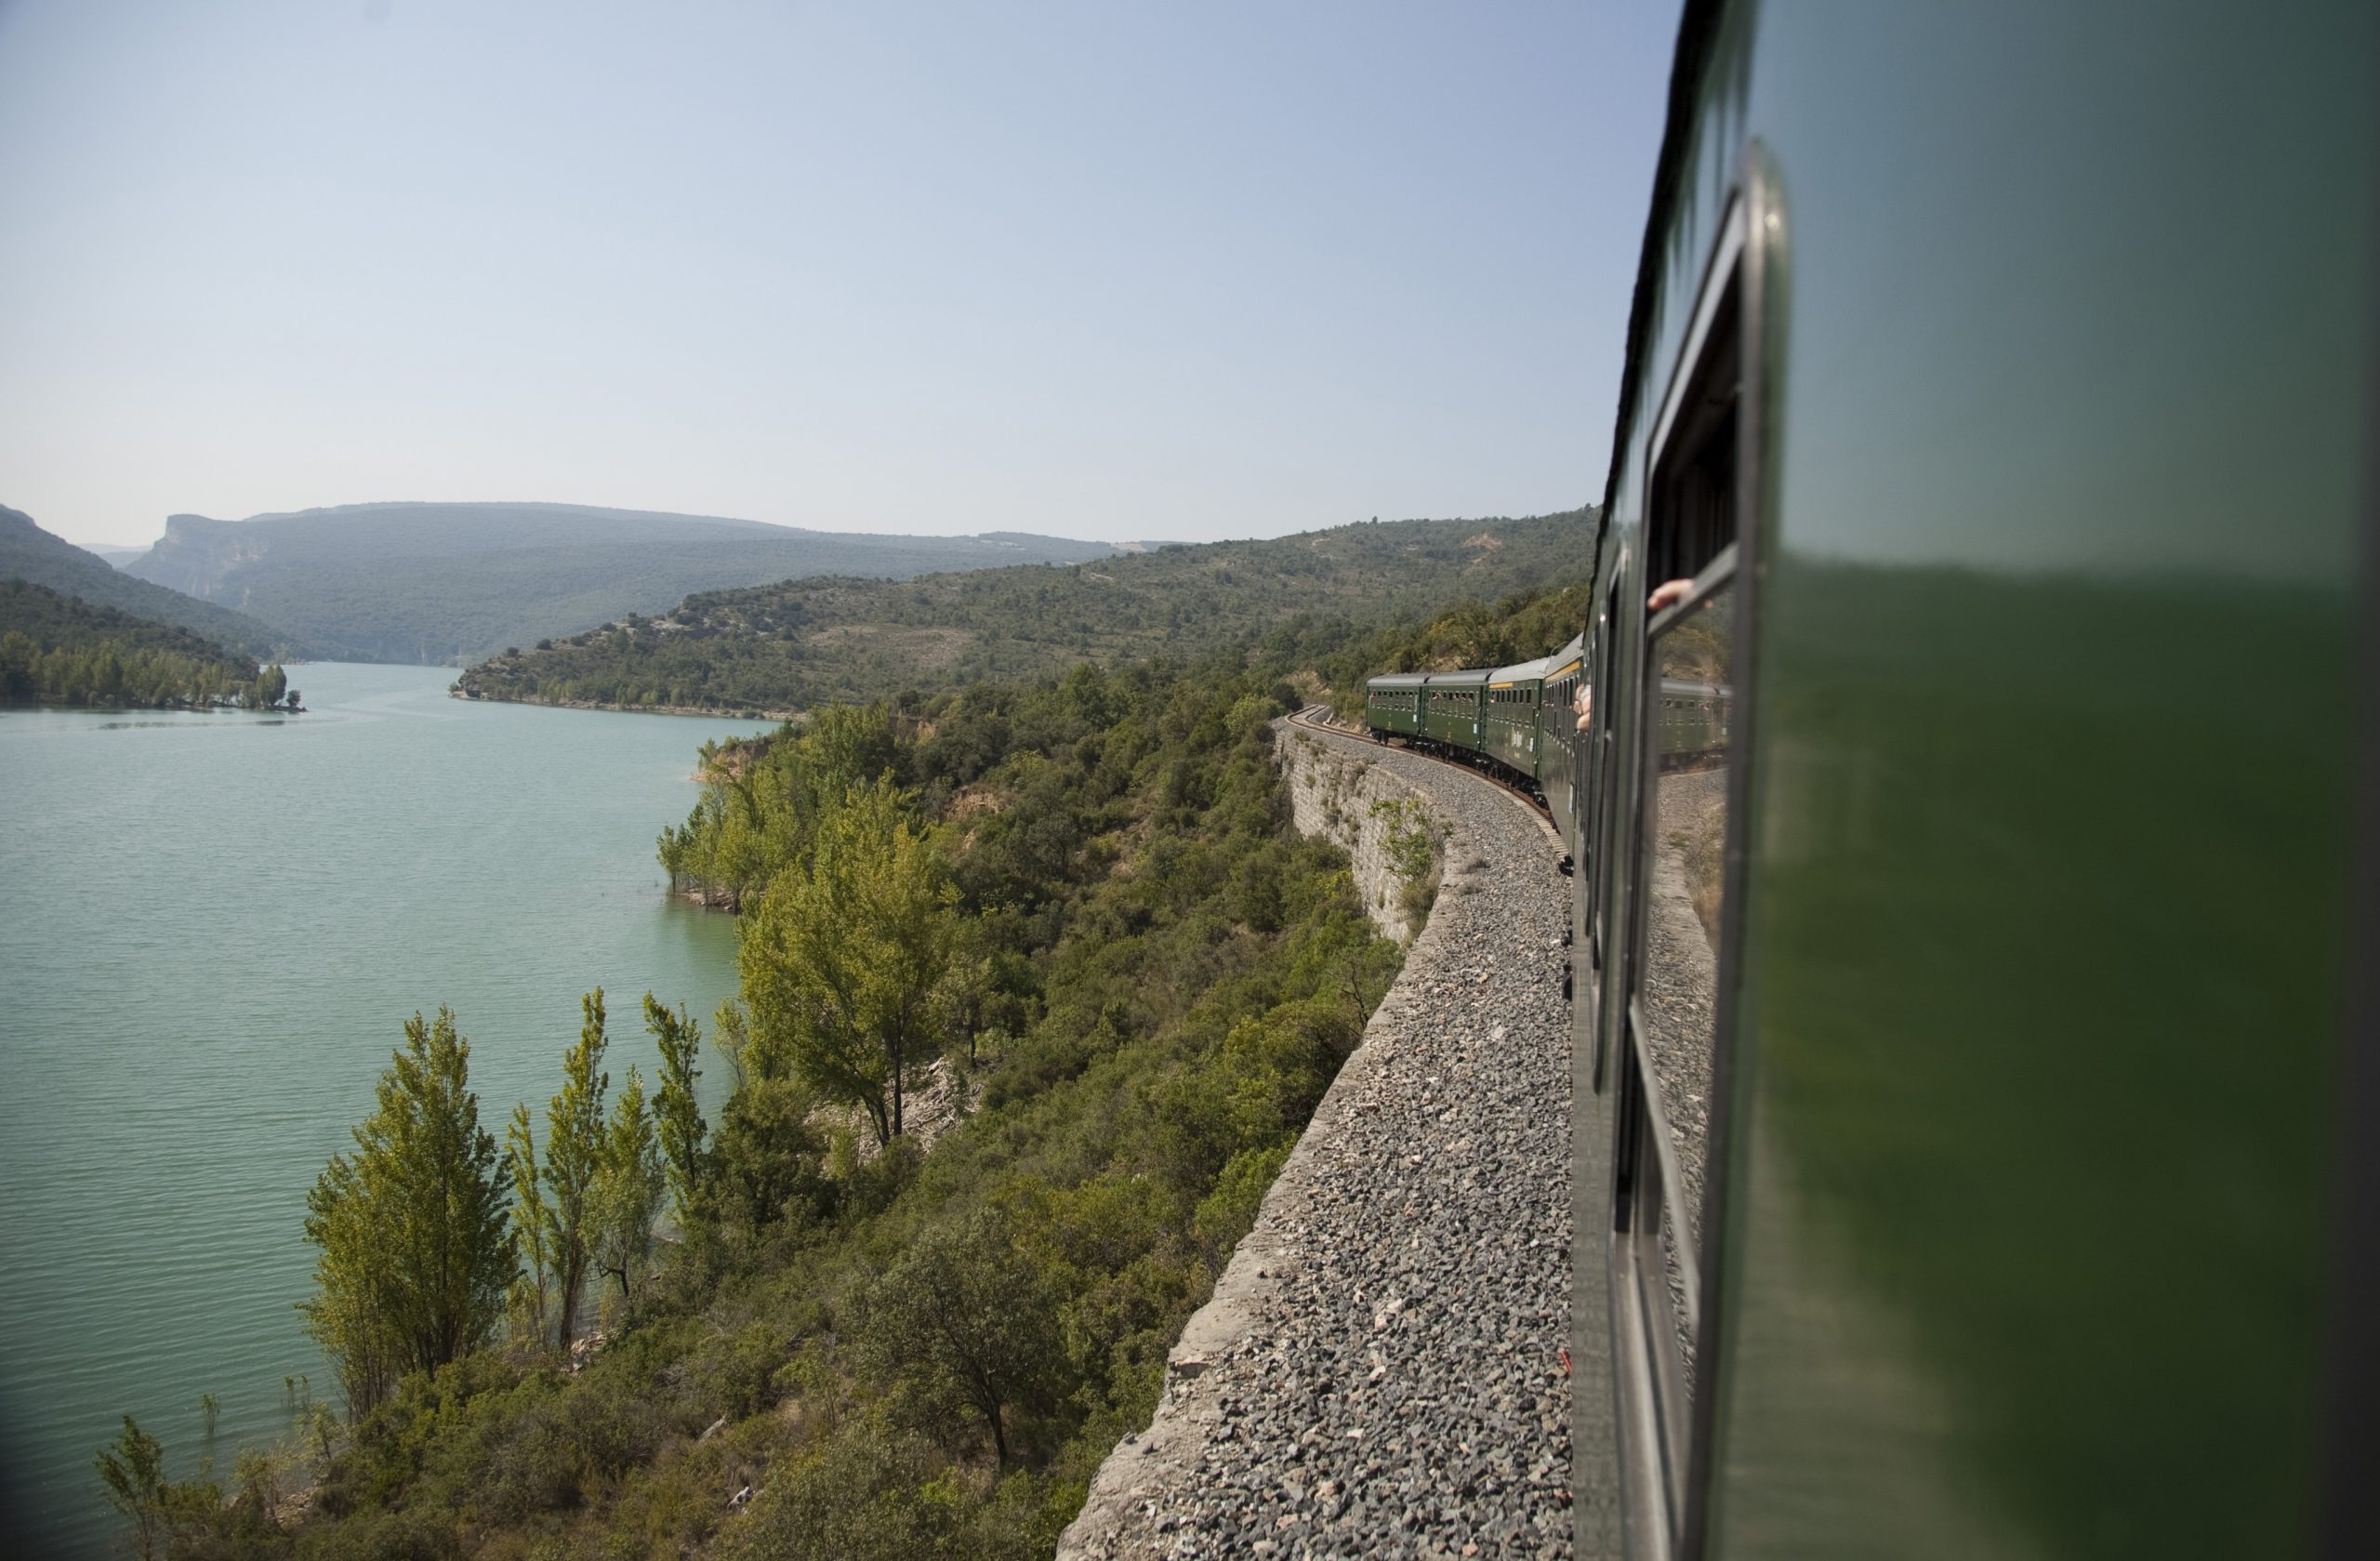 El tren y el magnífico paisaje visto durante el viaje / El tren y el magnífico paisaje vistos durante el trayecto